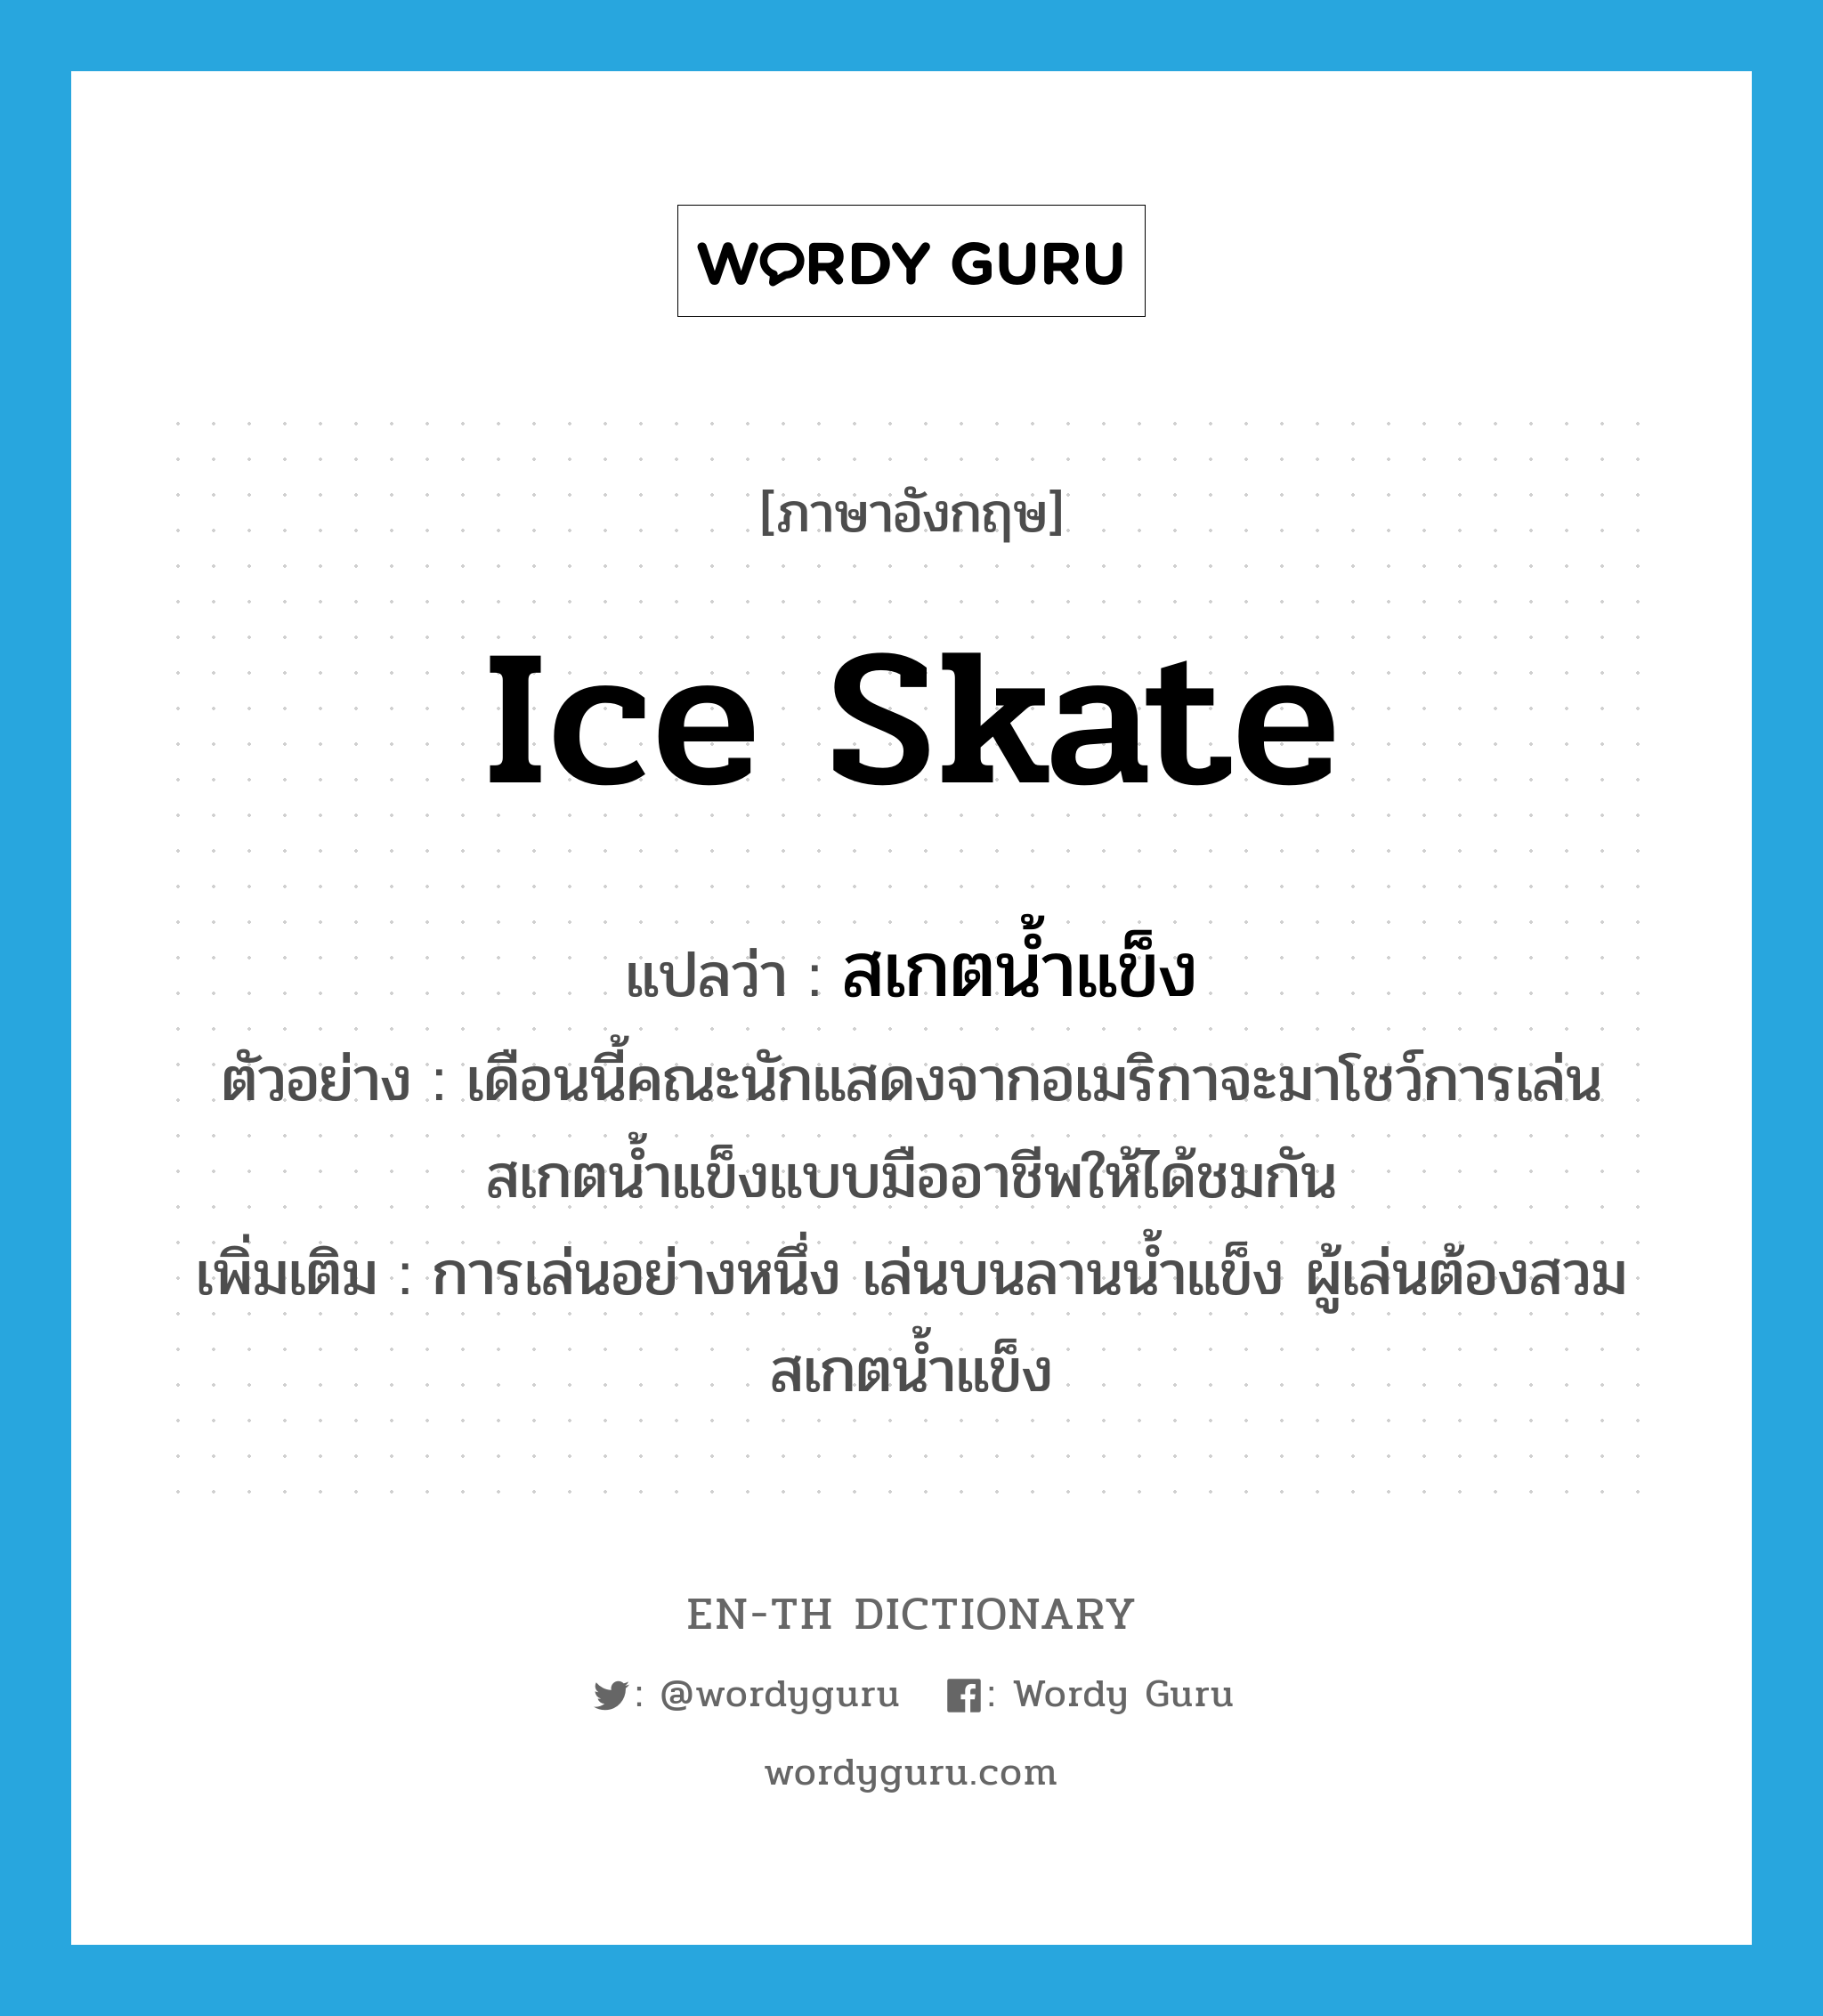 สเกตน้ำแข็ง ภาษาอังกฤษ?, คำศัพท์ภาษาอังกฤษ สเกตน้ำแข็ง แปลว่า ice skate ประเภท N ตัวอย่าง เดือนนี้คณะนักแสดงจากอเมริกาจะมาโชว์การเล่นสเกตน้ำแข็งแบบมืออาชีพให้ได้ชมกัน เพิ่มเติม การเล่นอย่างหนึ่ง เล่นบนลานน้ำแข็ง ผู้เล่นต้องสวมสเกตน้ำแข็ง หมวด N